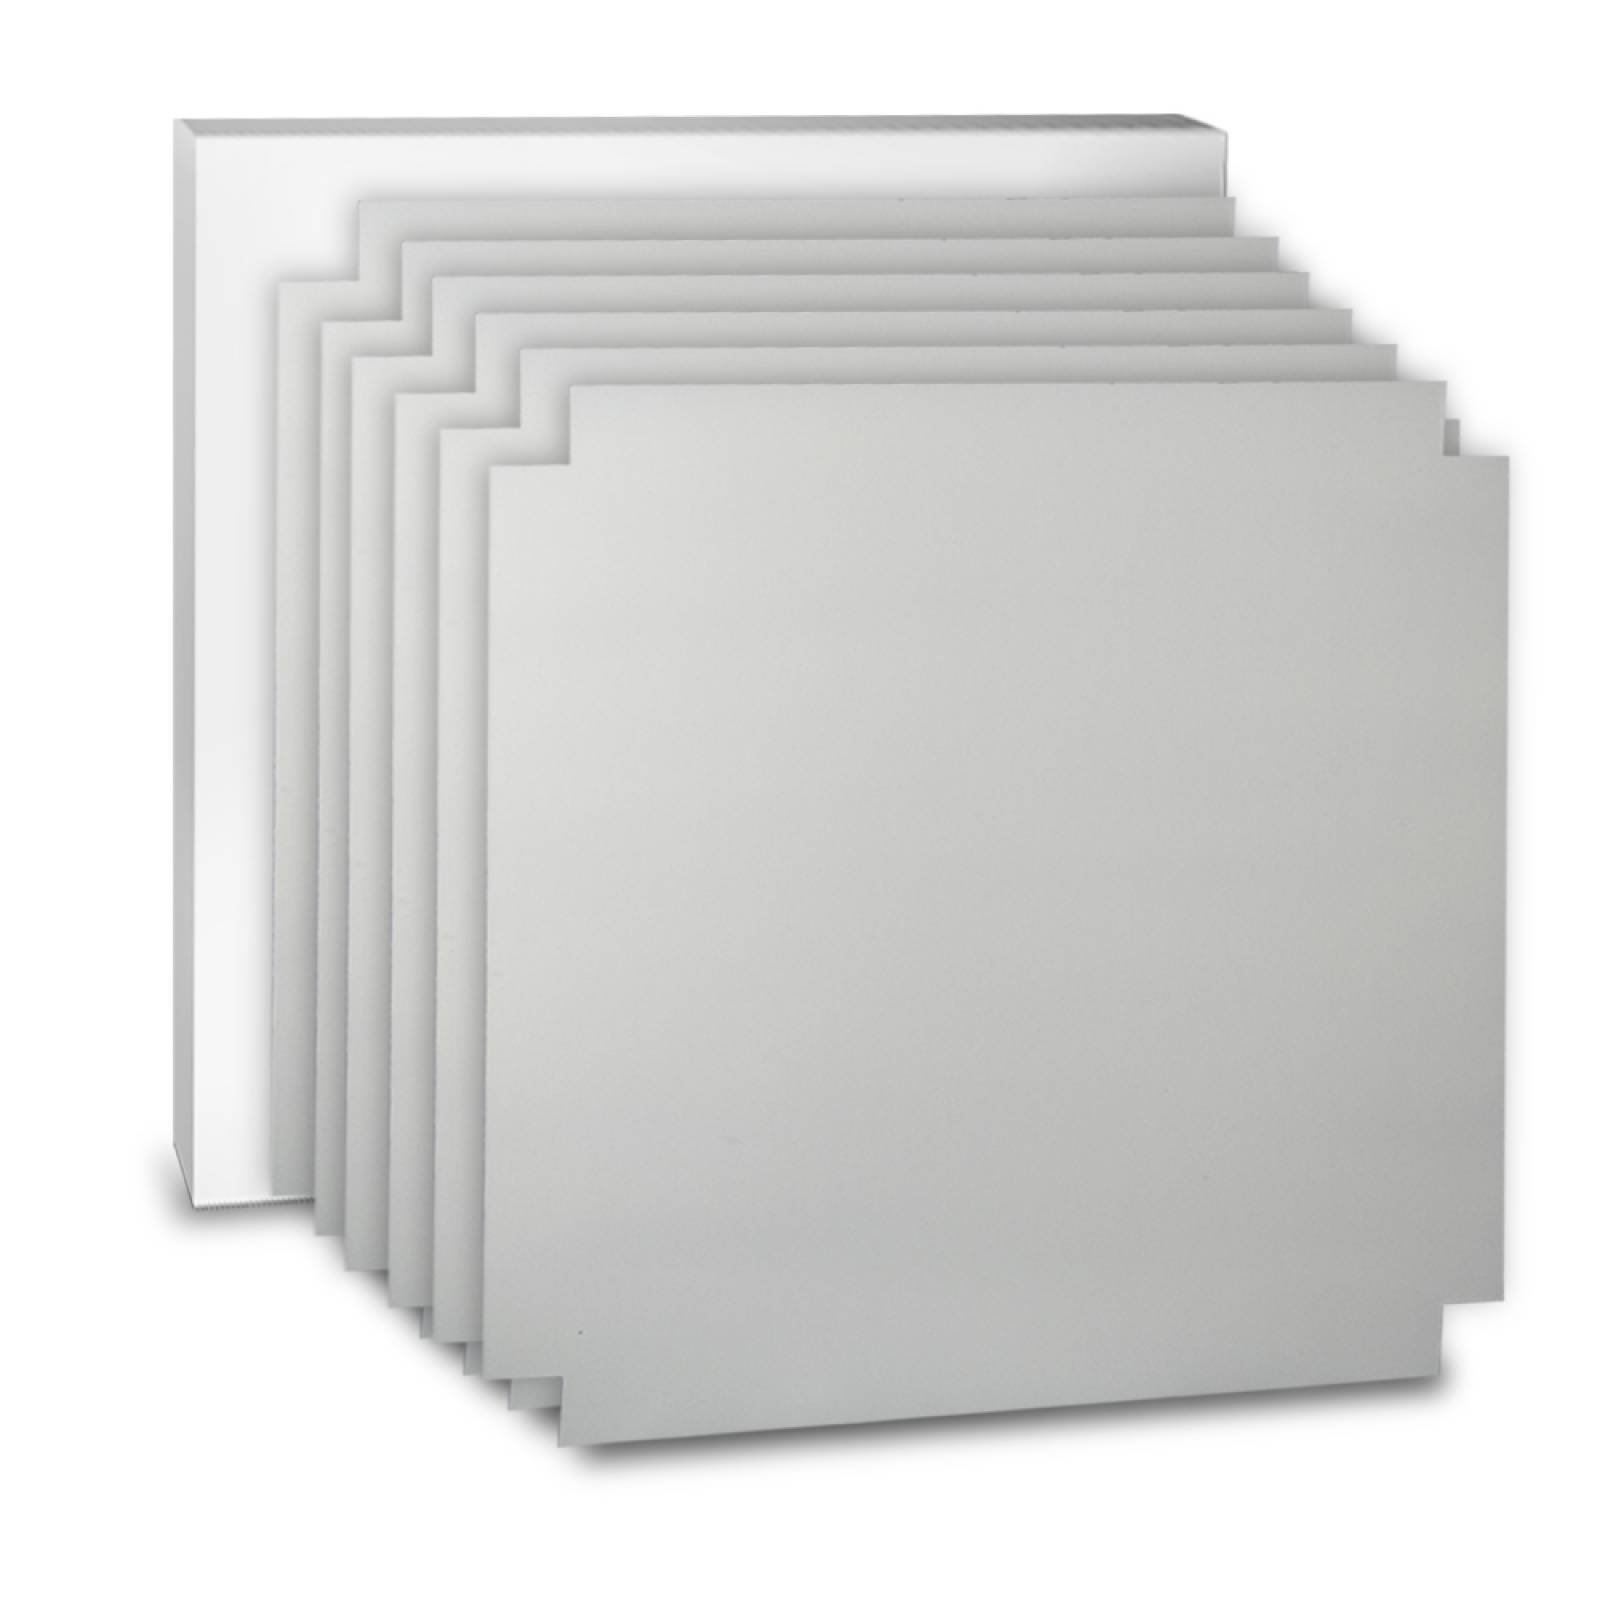 Aislante Cerámico Protector Térmico para Pared de 52 x 45 cm Blanco, Paquete 6 Piezas, Mod: 4PTPP6Bl